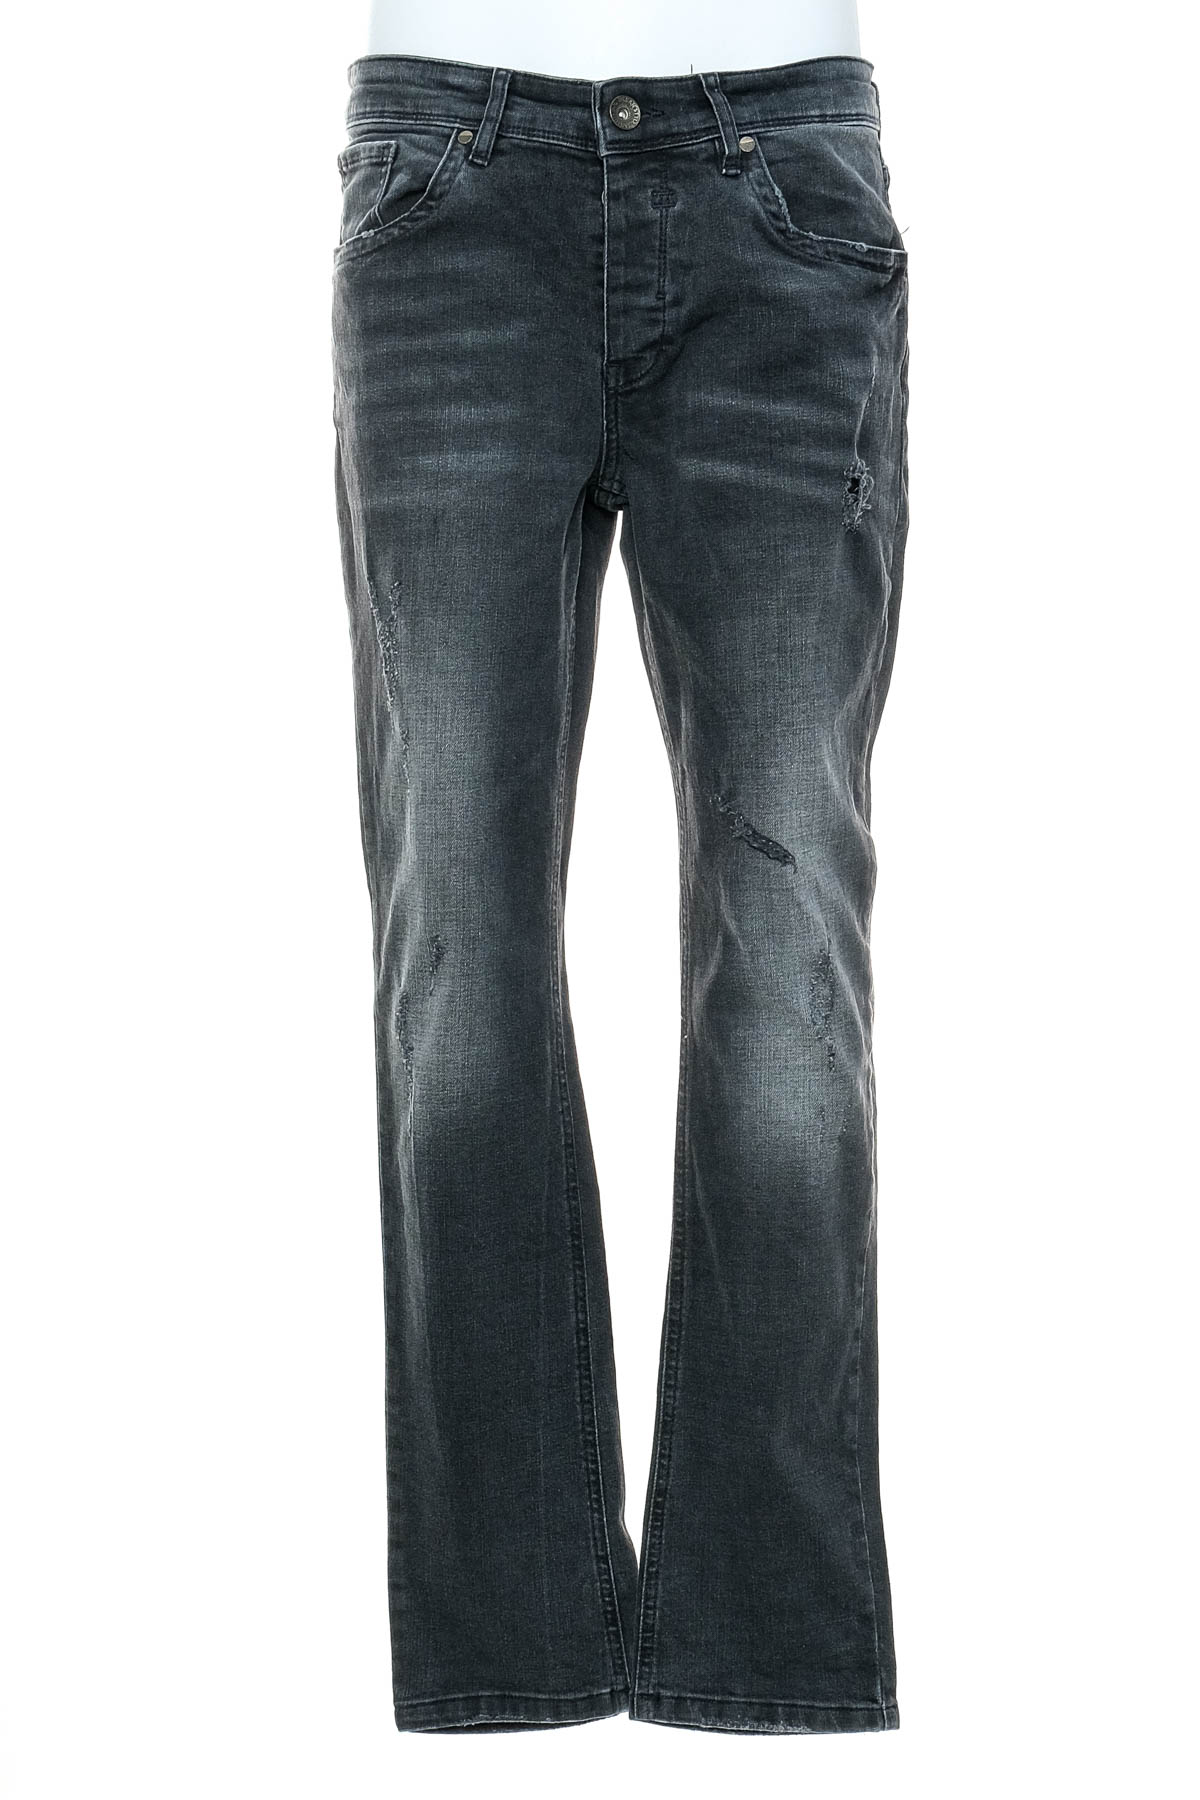 Jeans pentru bărbăți - Urban Style - 0